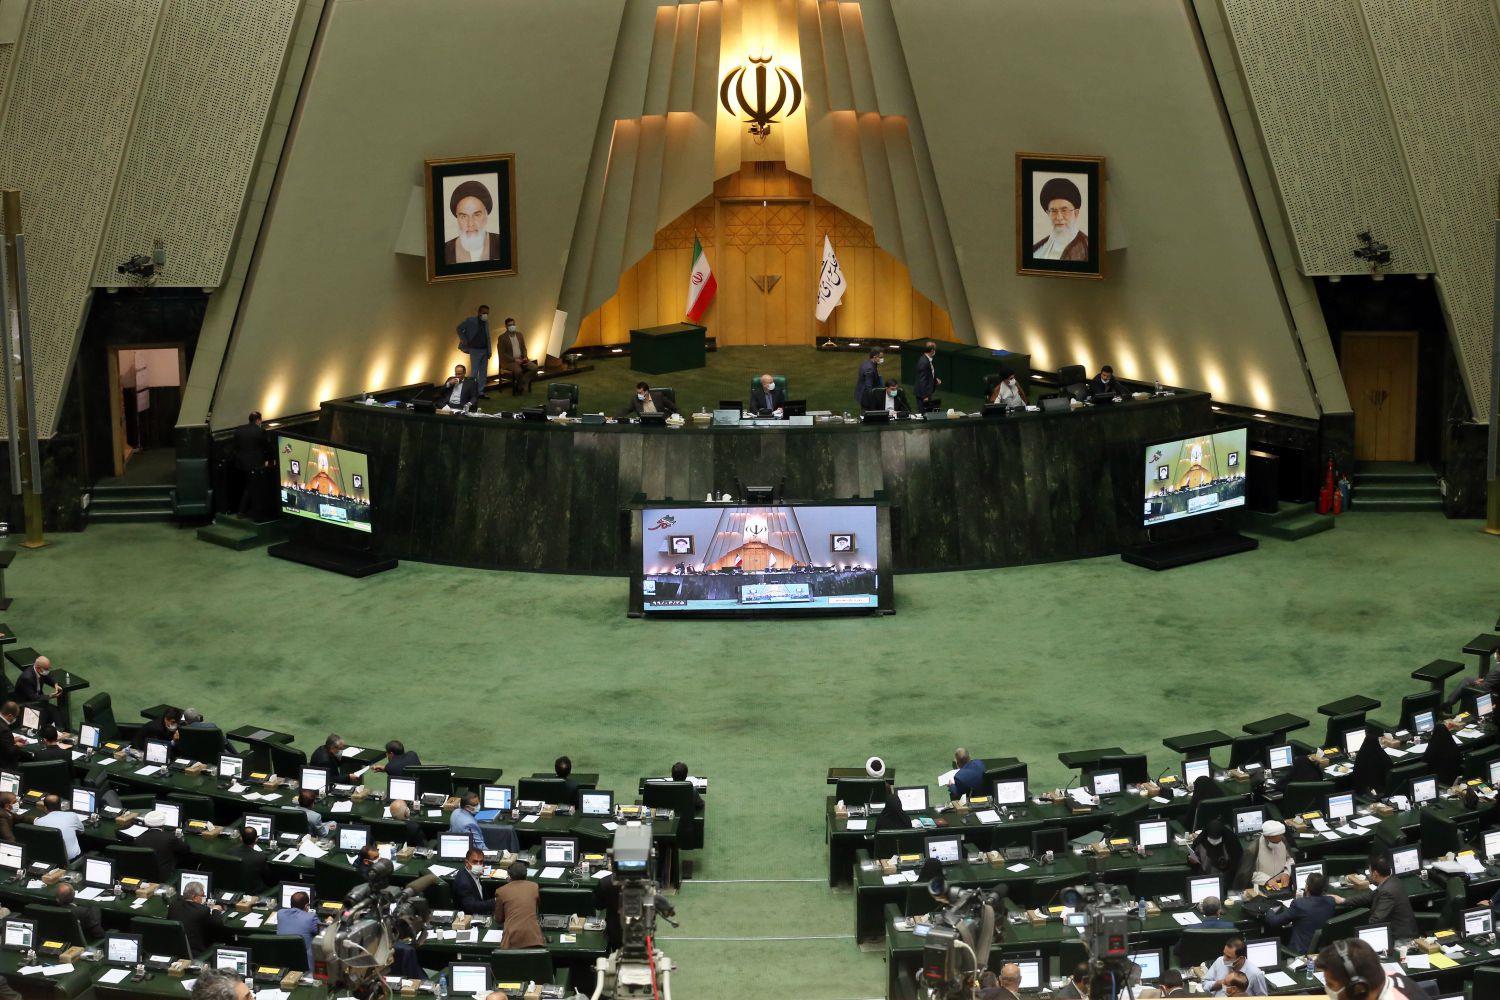 مجلس شورای اسلامی | غیردولتی نیوز